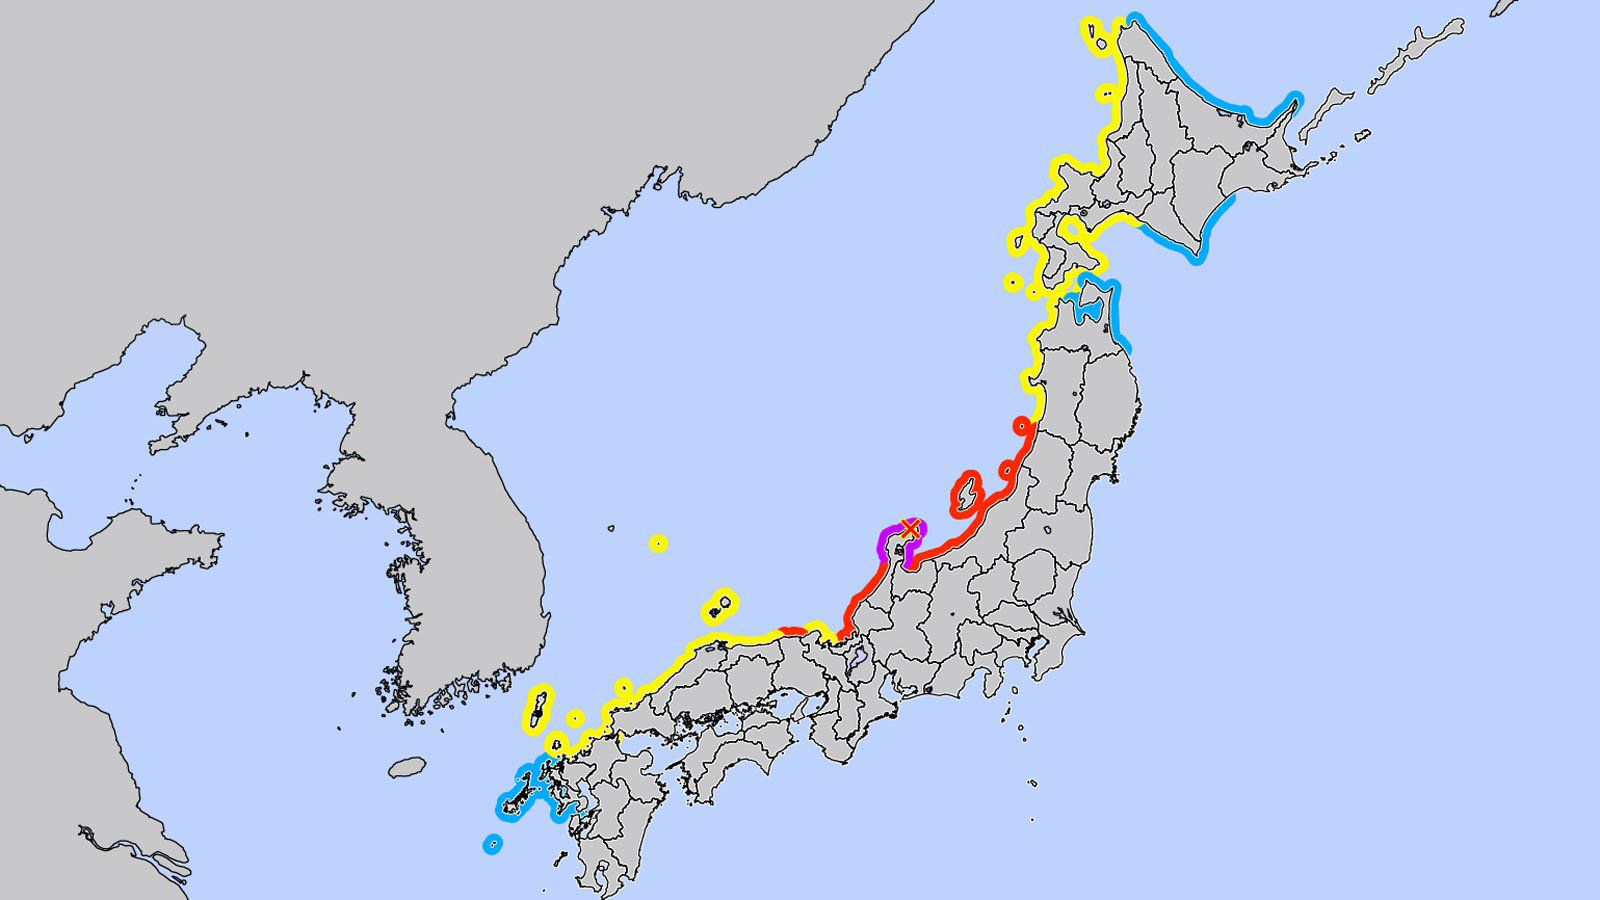 nagy-ereju-foldrenges-japan-cunamiriado_image_72c84f7373a889d632a4b92eb99e